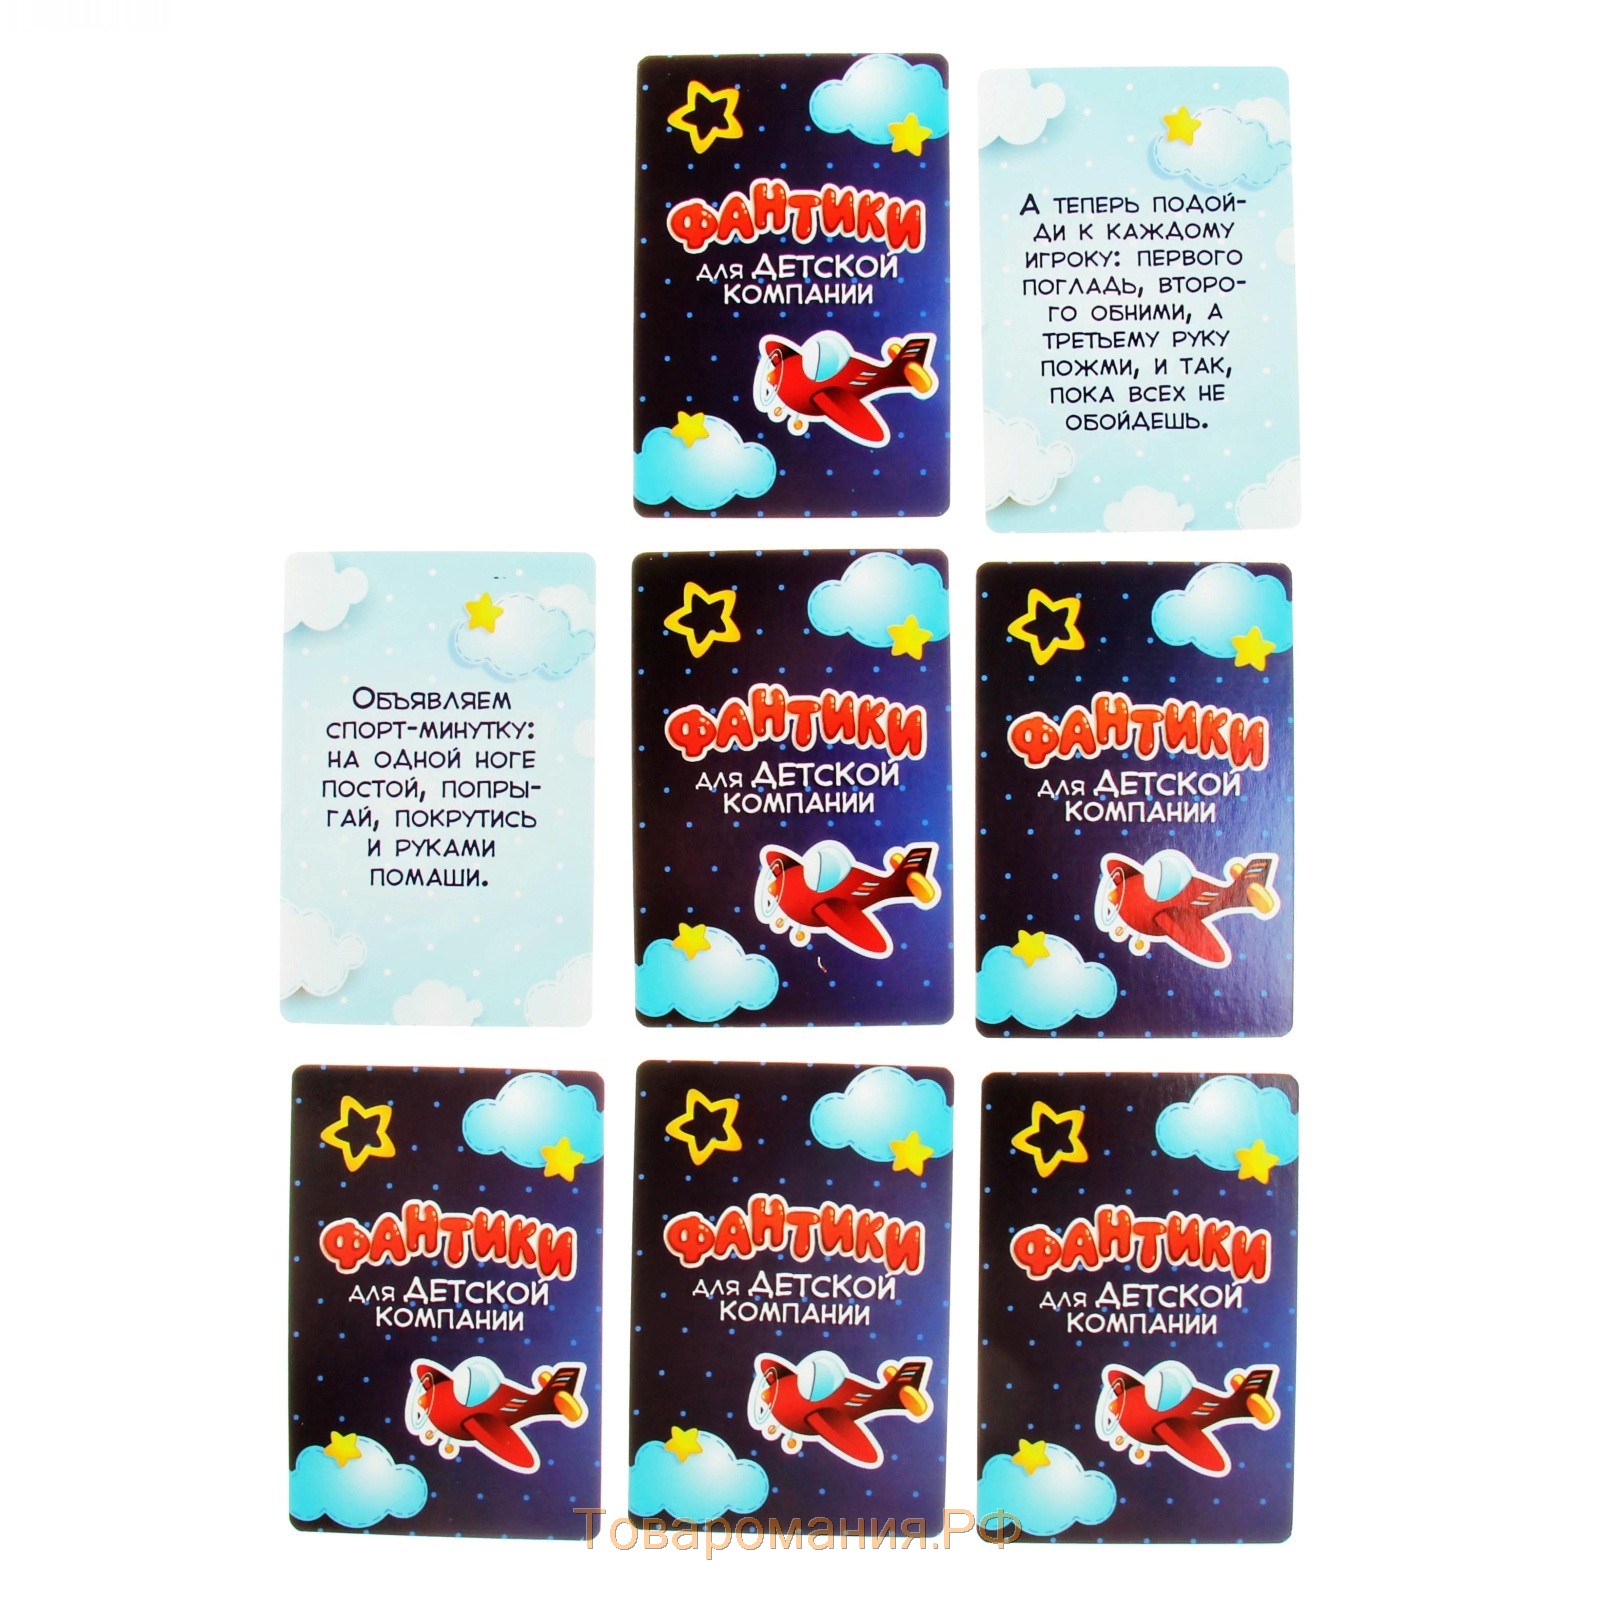 Фанты «Фантики для детской компании», 20 карт, 5+